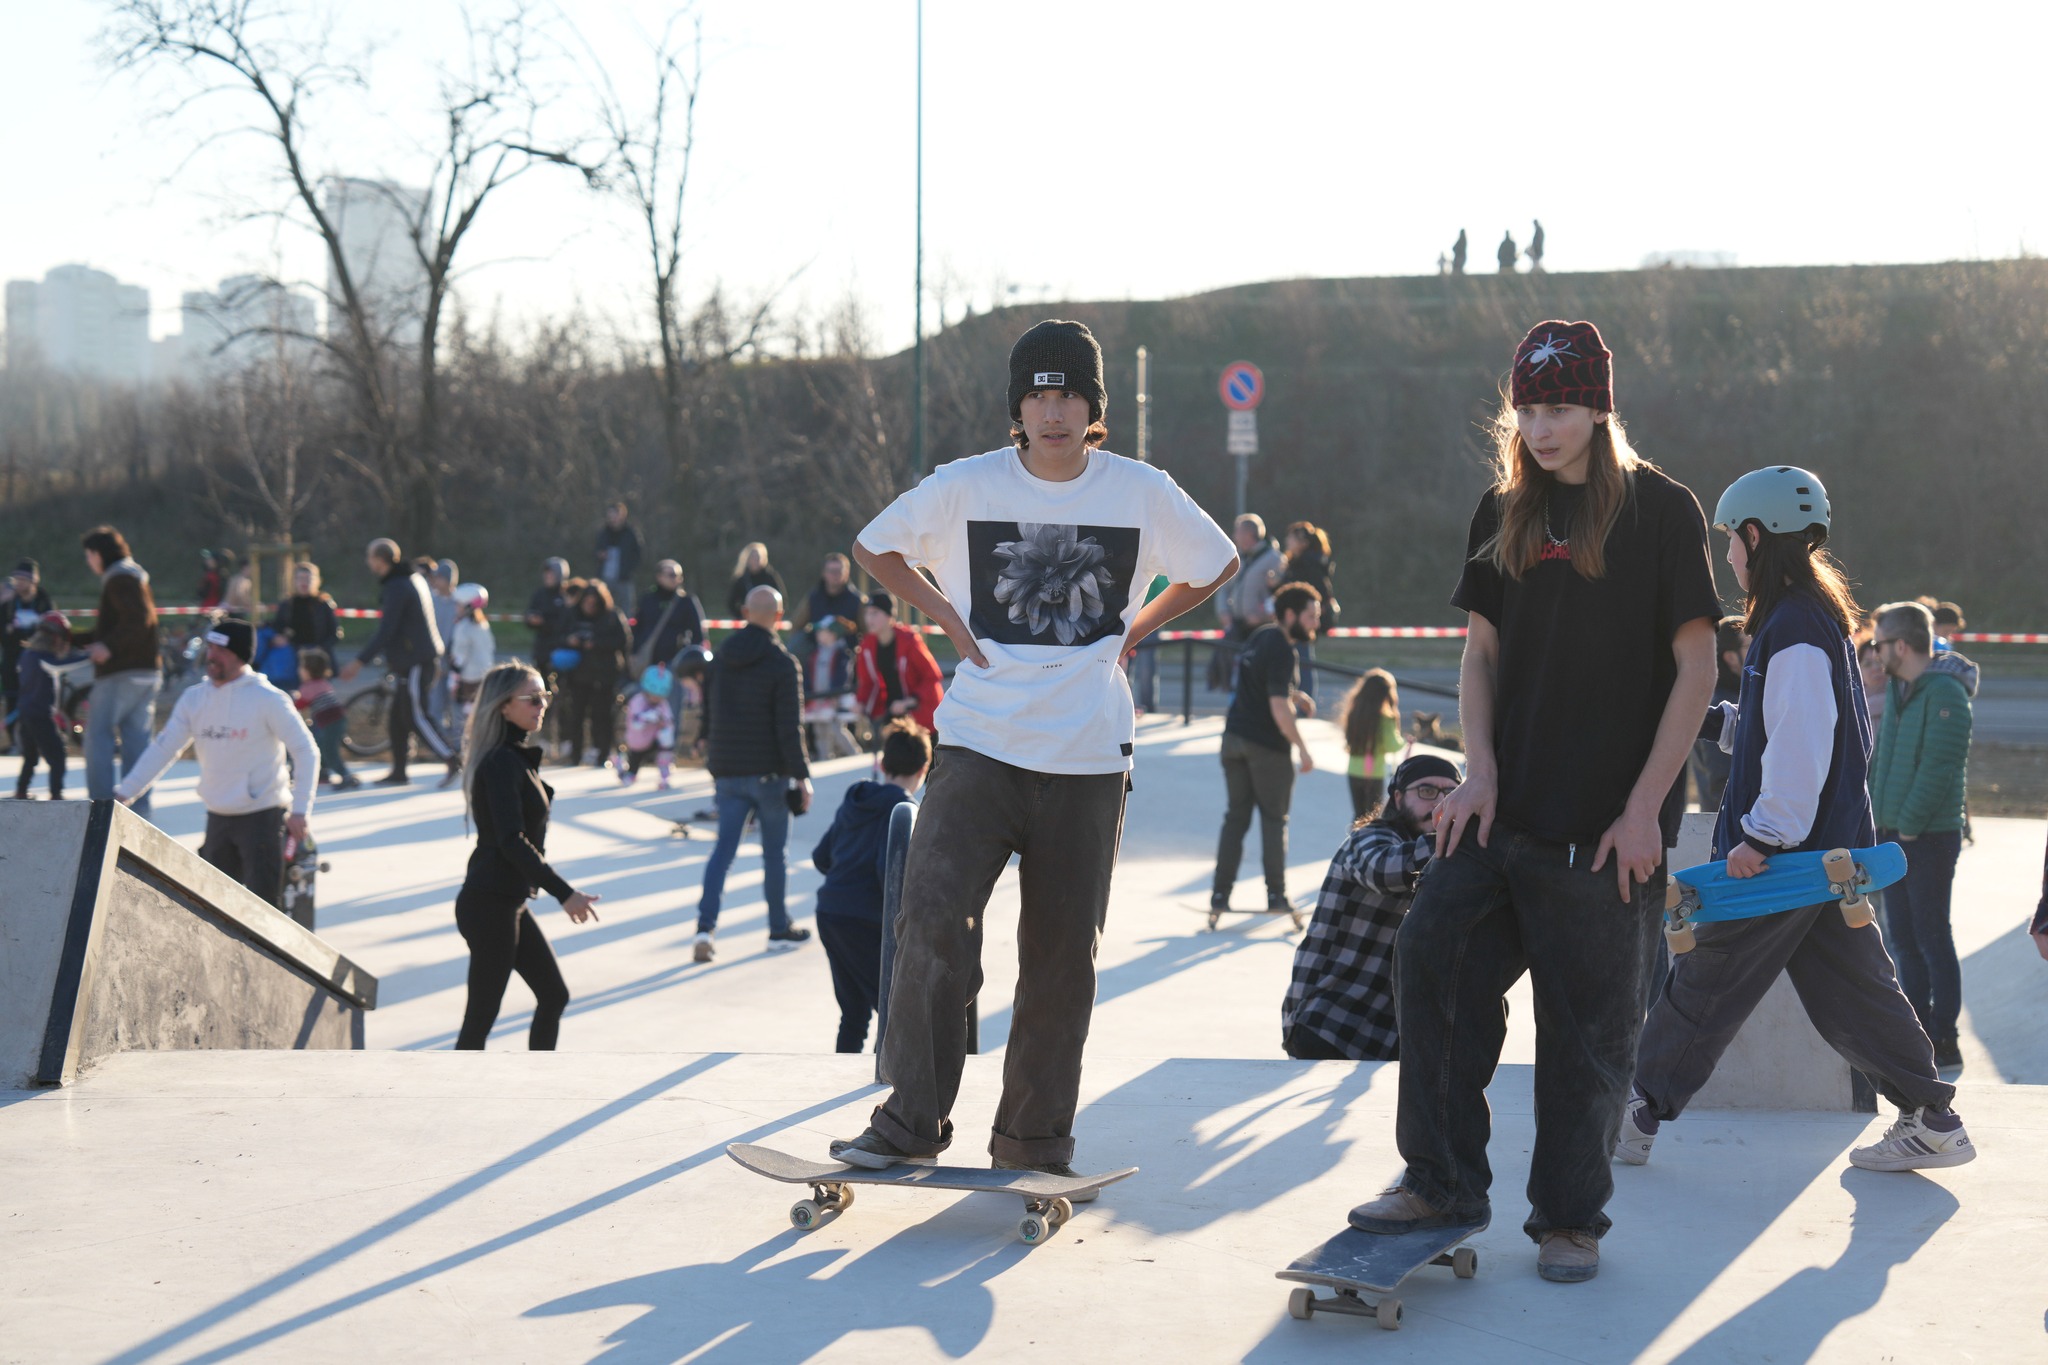 Inaugurazione skatepark: ragazzi con lo skate